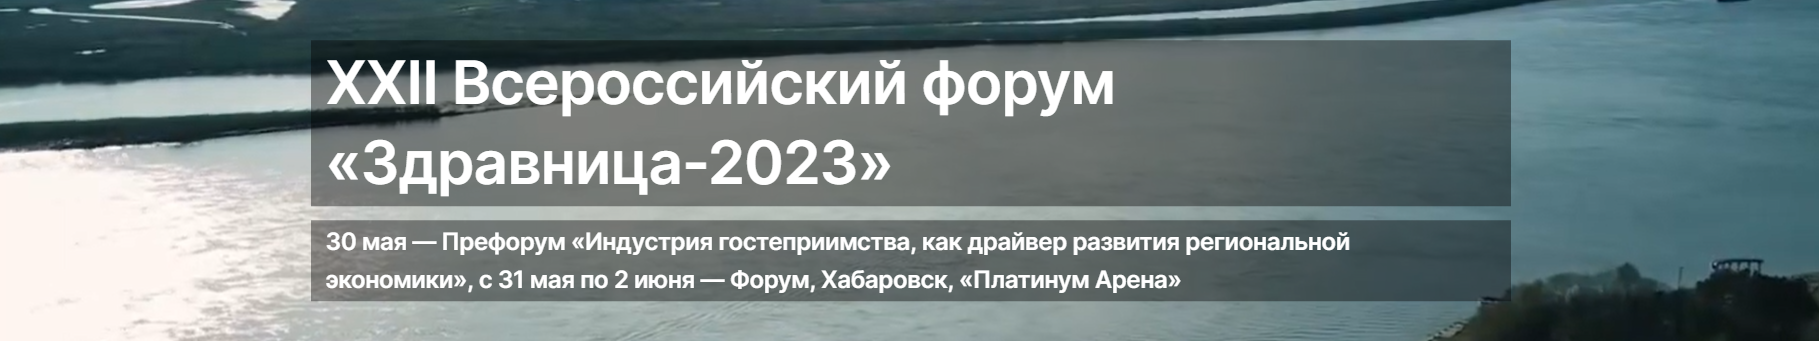 XXII ВСЕРОССИЙСКИЙ ФОРУМ «ЗДРАВНИЦА-2023»